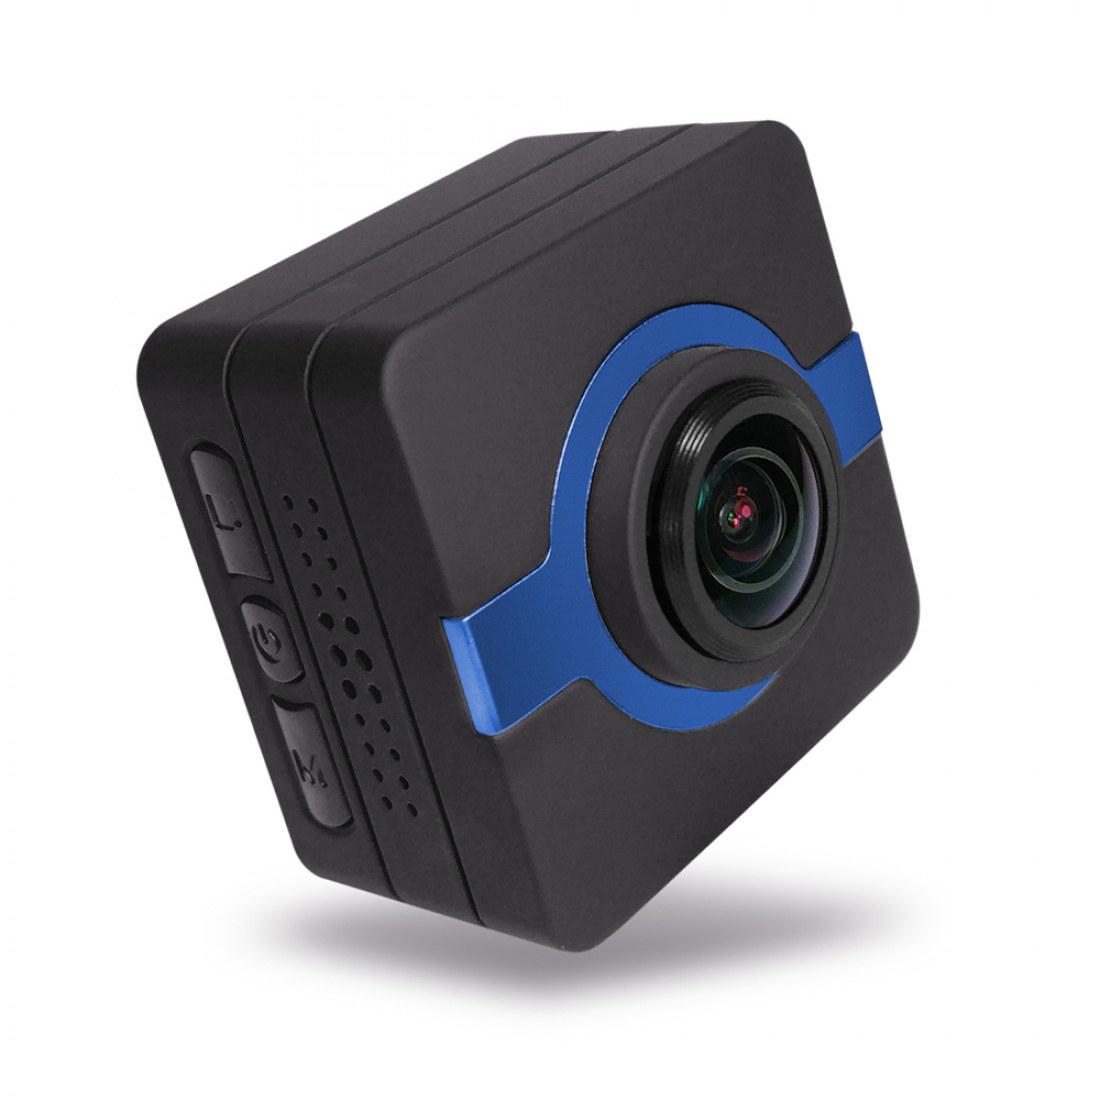 Matecam X1 รถแดชบอร์ดกล้อง CAM Recorder WIFI กีฬา Action กล้อง 4K-HI Ultra HD กันน้ำ DV กล้องวิดีโอ 16MP 160 องศามุมกว้าง WIFI/G-Sensor/Gyro Stabilization/การตรวจจับการเคลื่อนไหว/รีโมทคอนโทรล RC CAM จักรยานหมวกนิรภัย Cam Navy